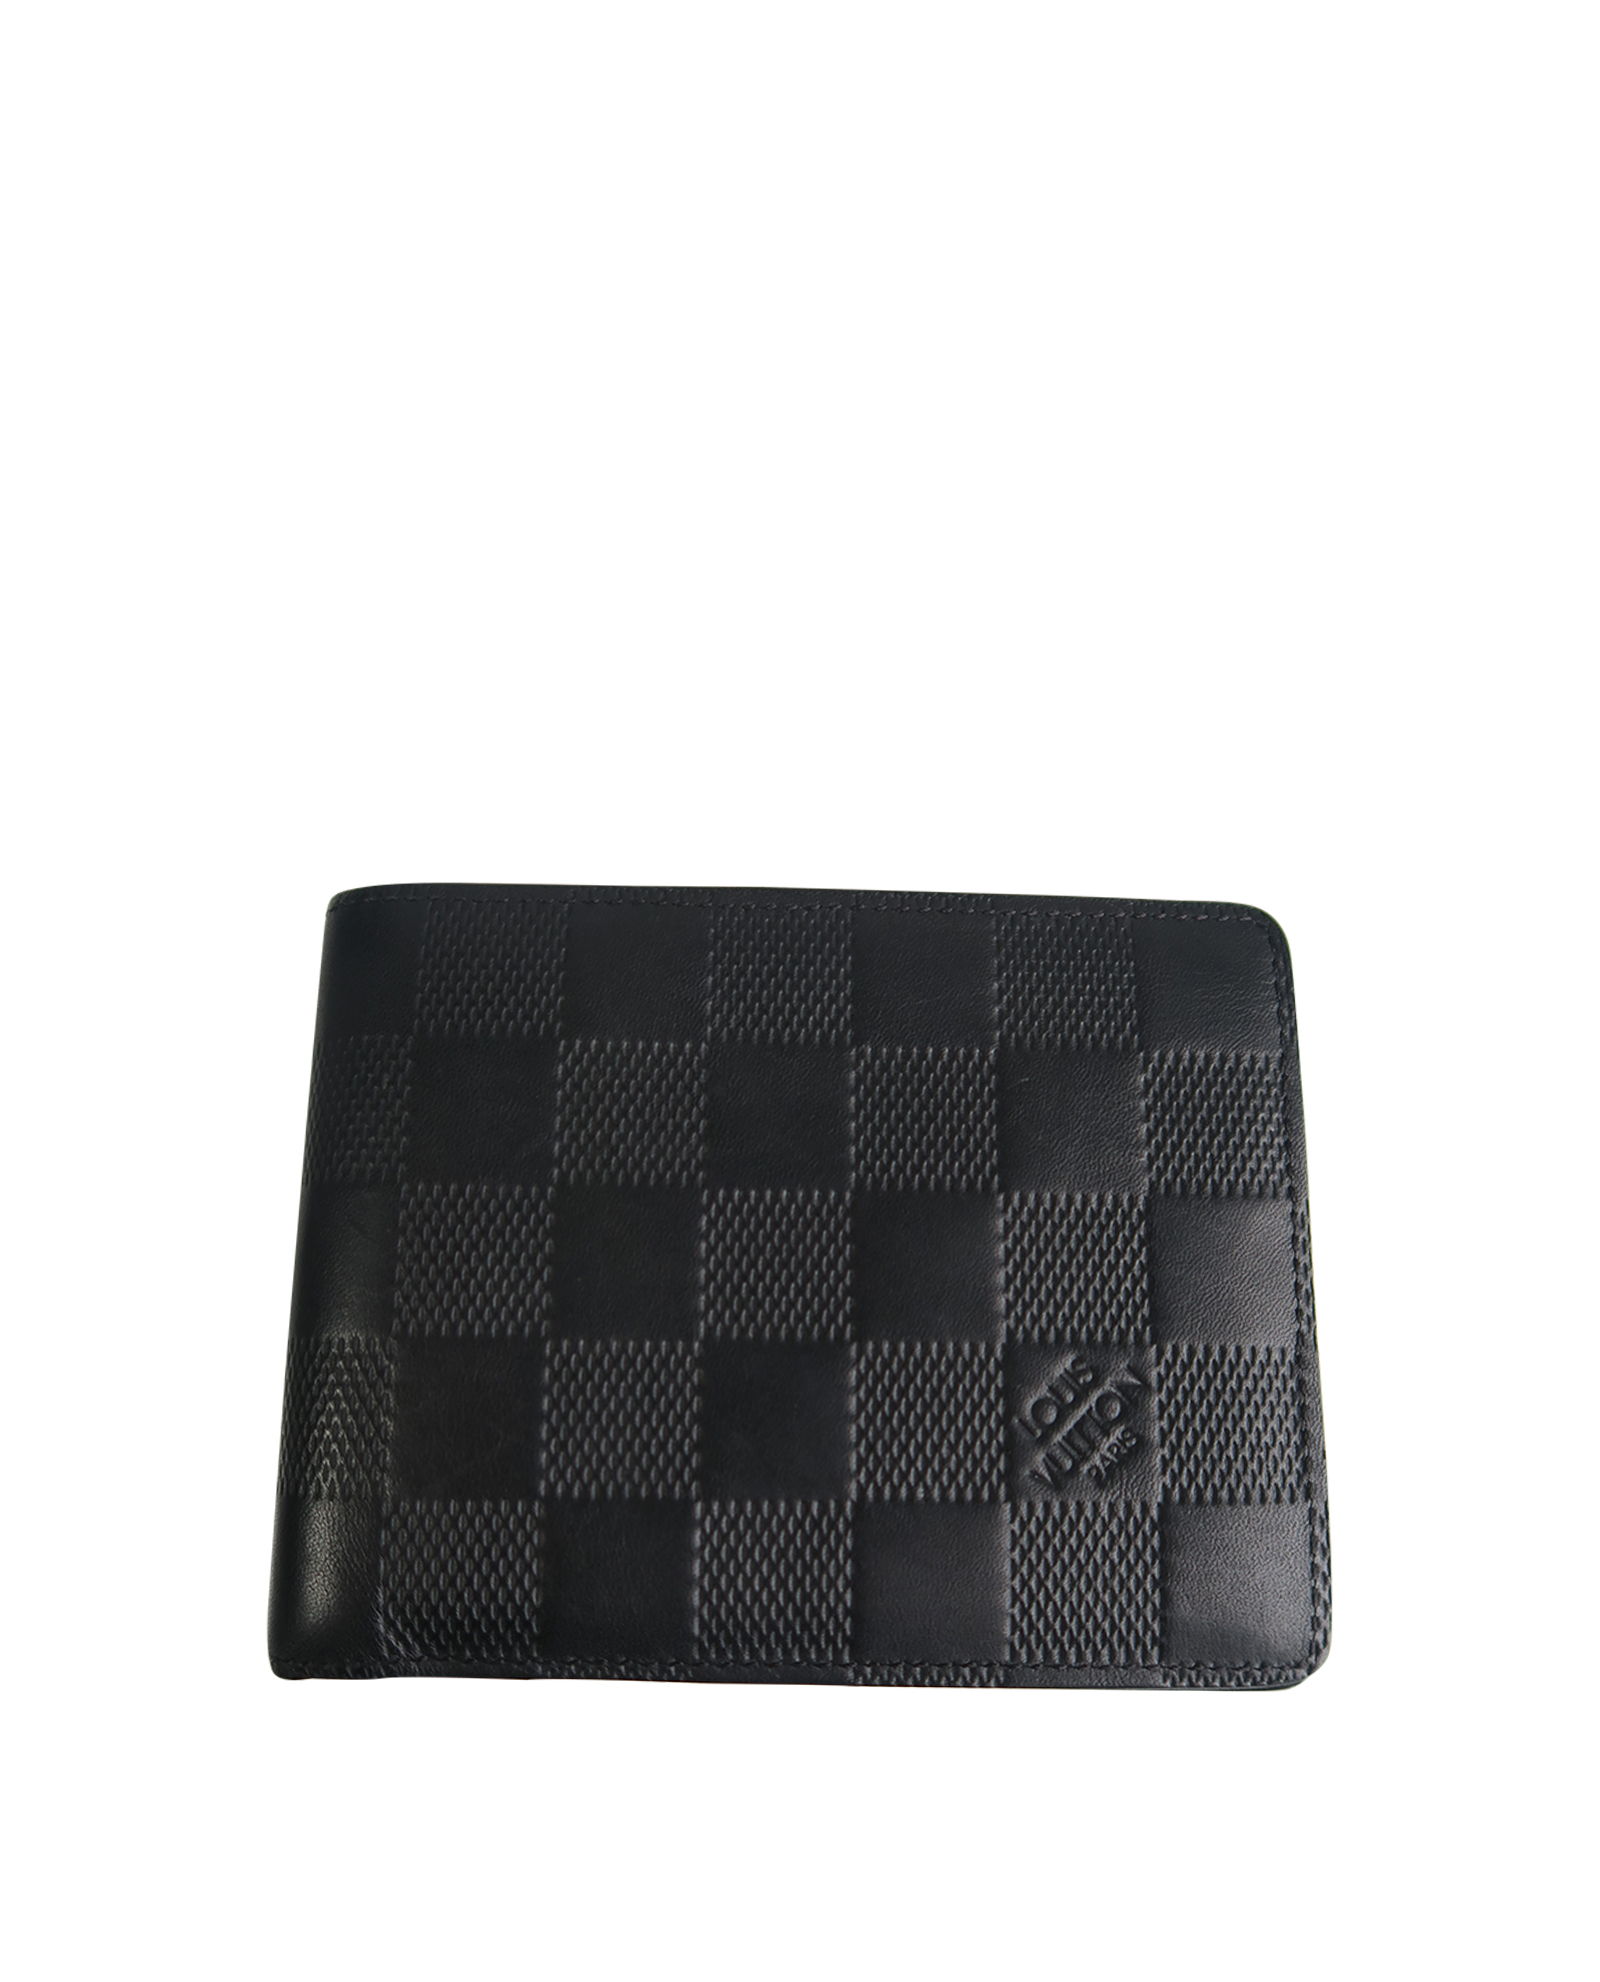 Louis Vuitton - Multiple Wallet - Leather - Black - Men - Luxury